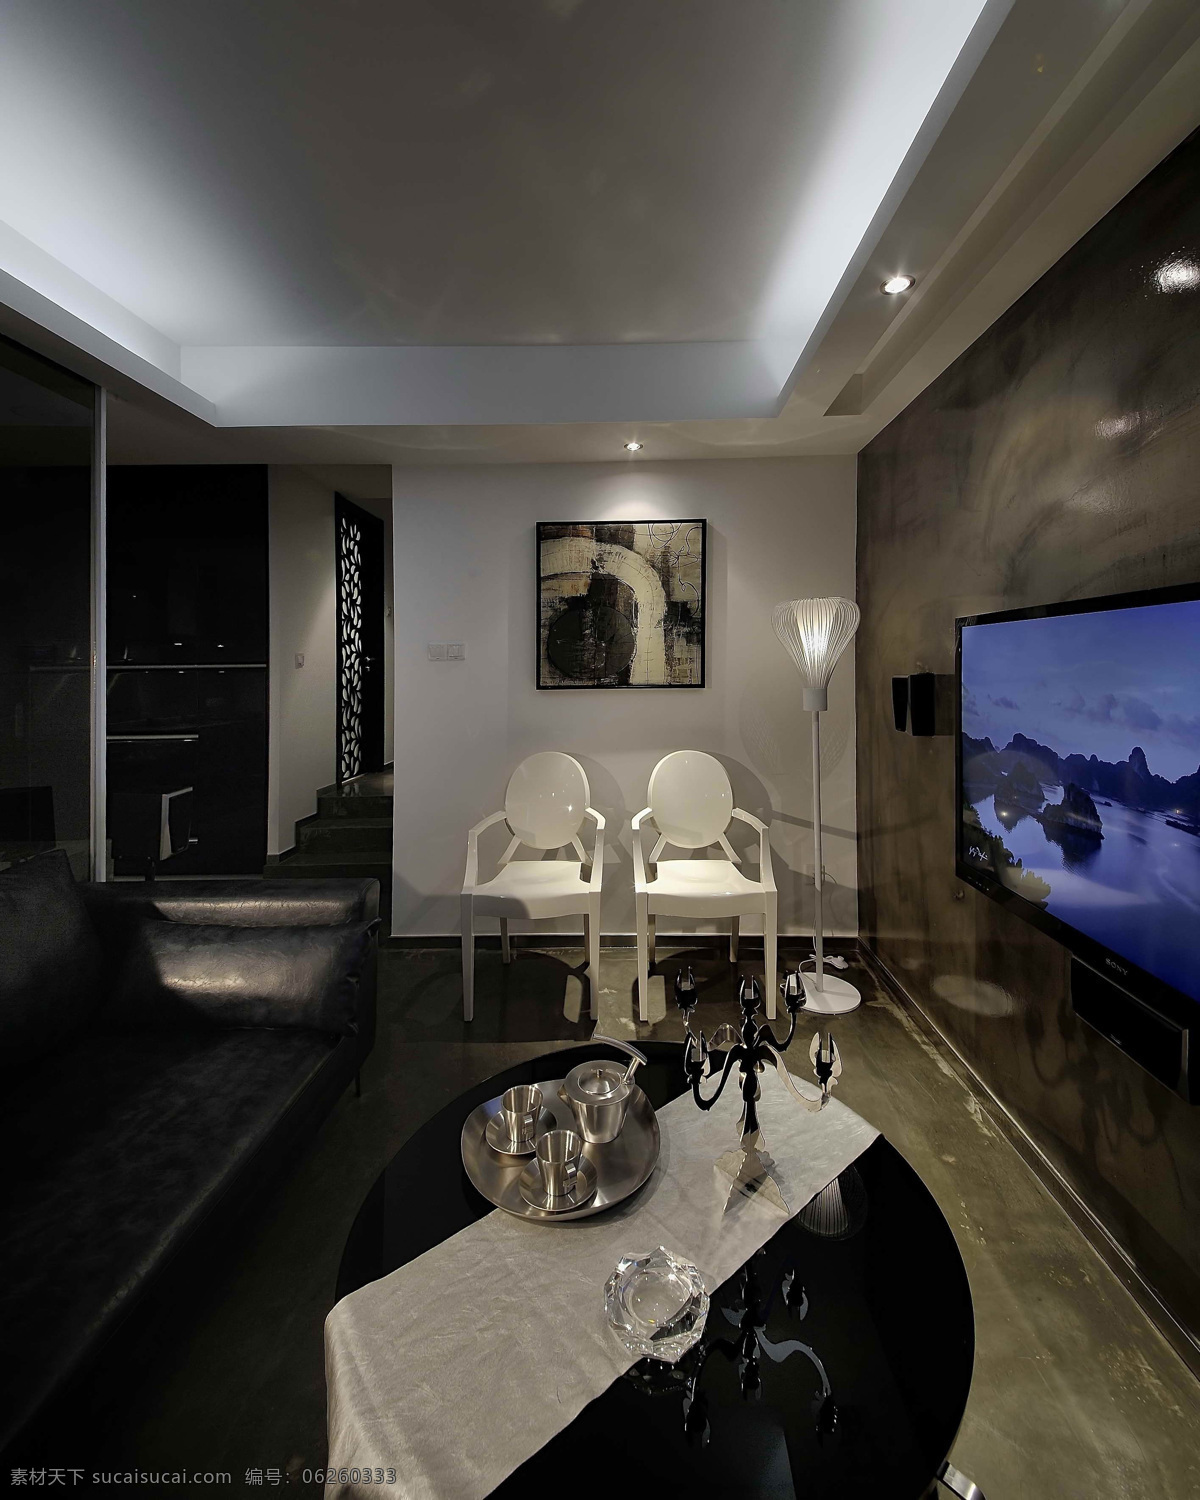 3d 高清 效果图 家装 当代欧式 简约 时尚 奢华 室内 室内设计 环境设计 装修 软装 客厅 卧室 厨房